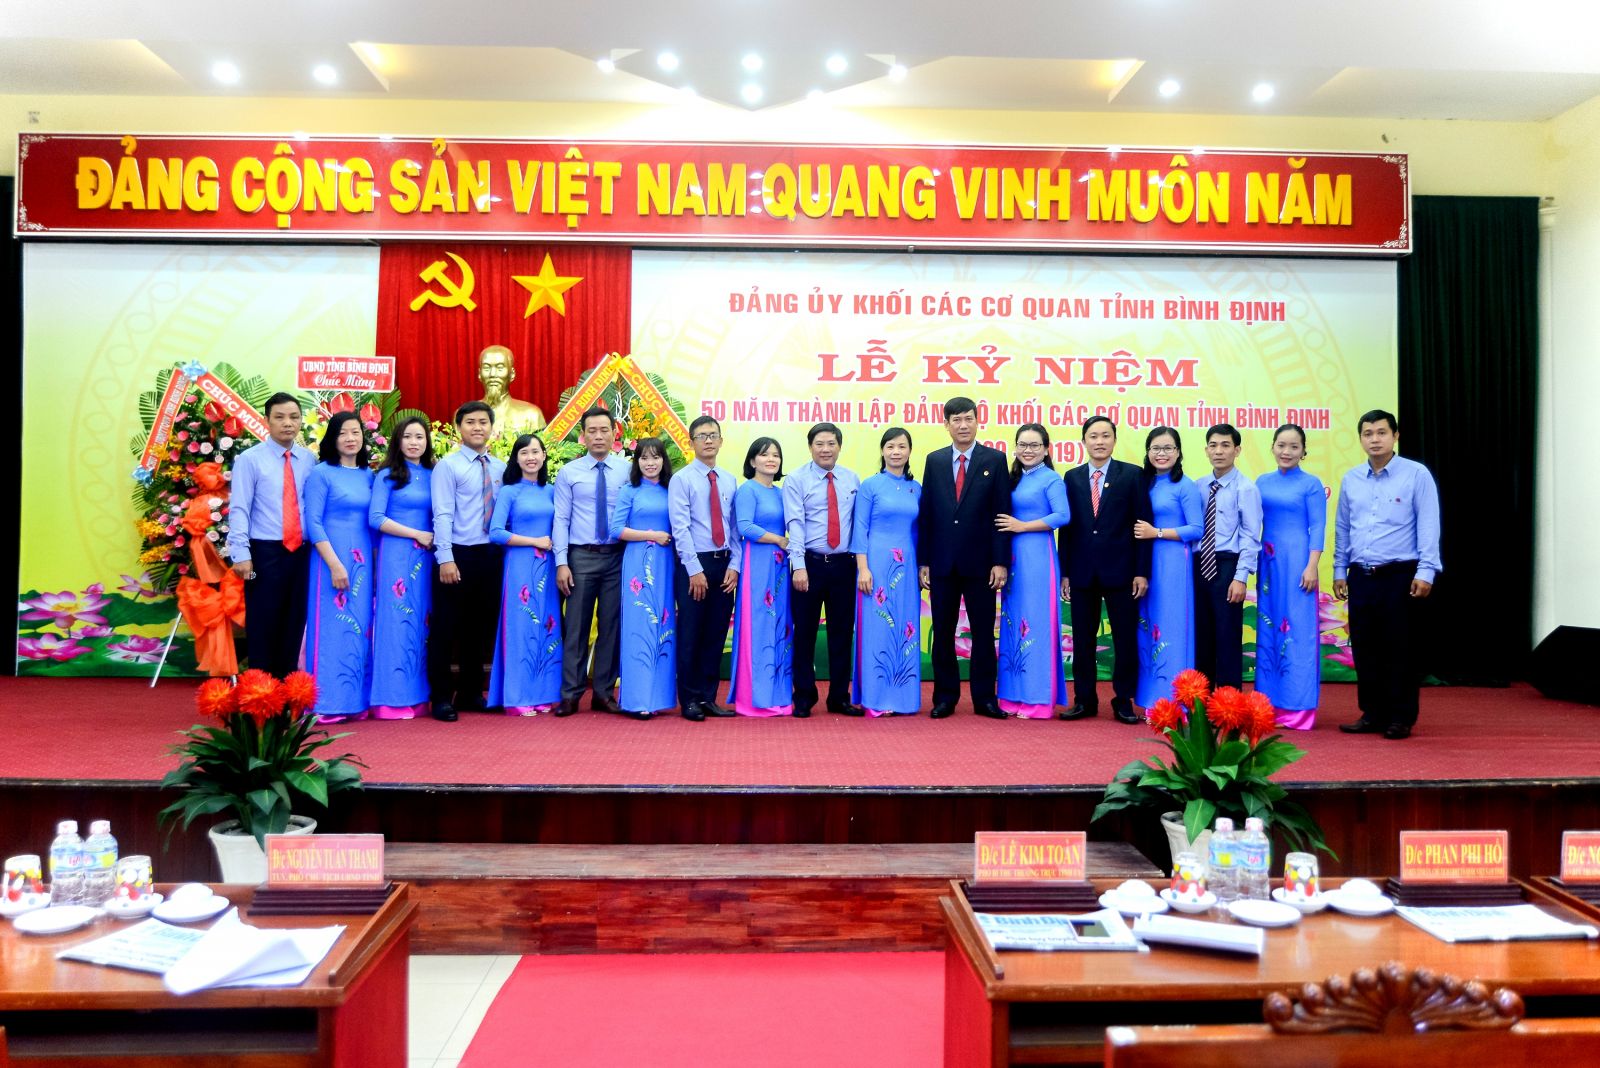 Lễ kỷ niệm 50 năm thành lập Đảng bộ Khối các cơ quan tỉnh Bình Định (1969-2019)